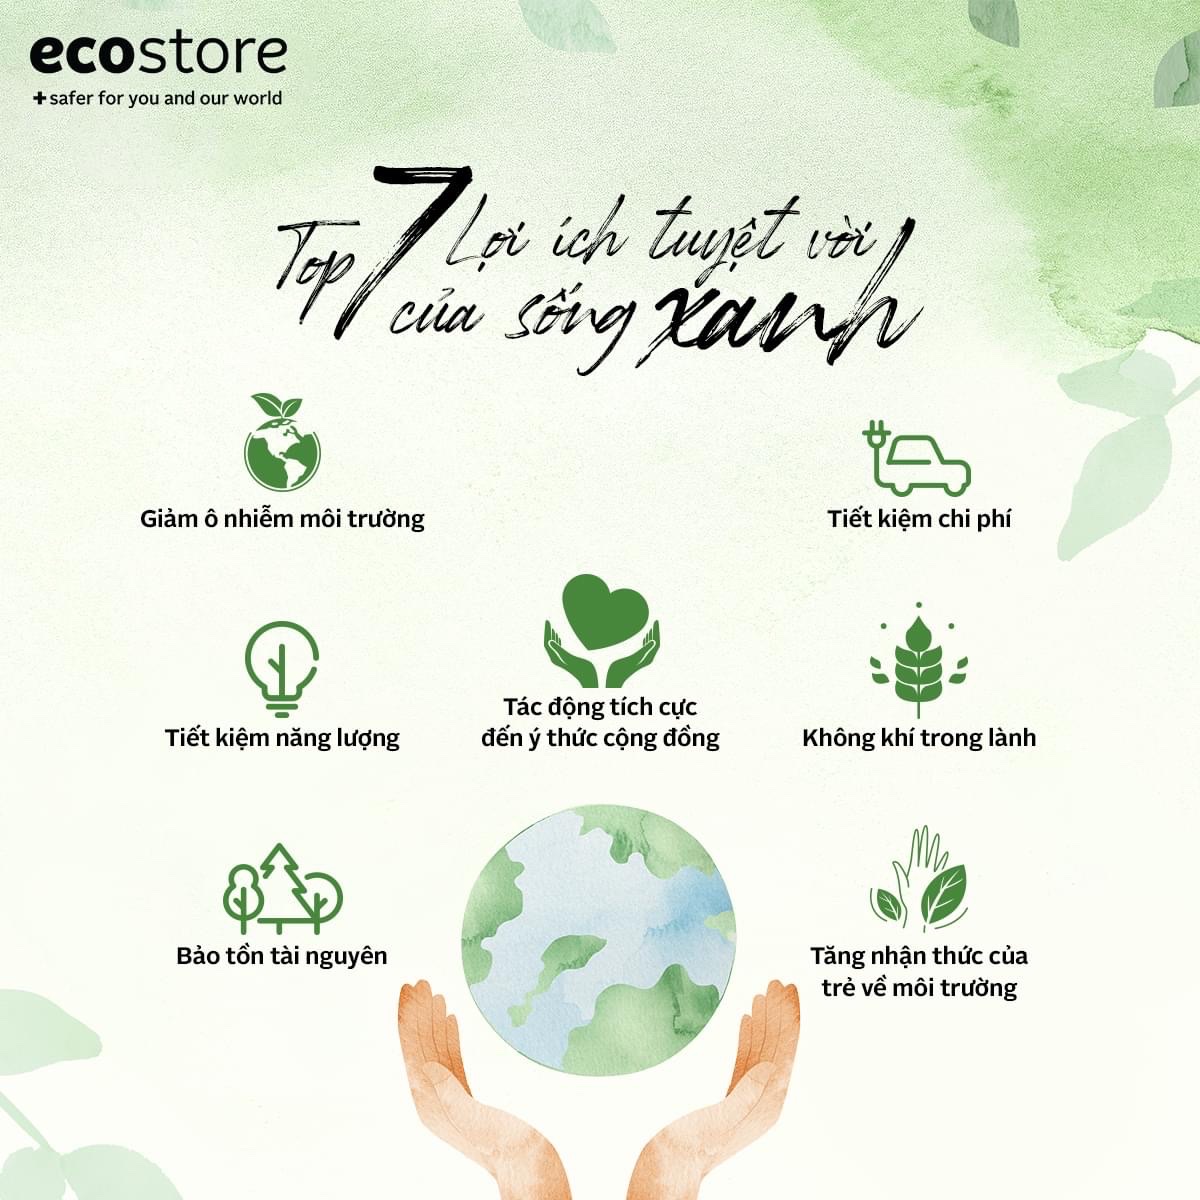 Top 7 lợi ích tuyệt vời của sống xanh